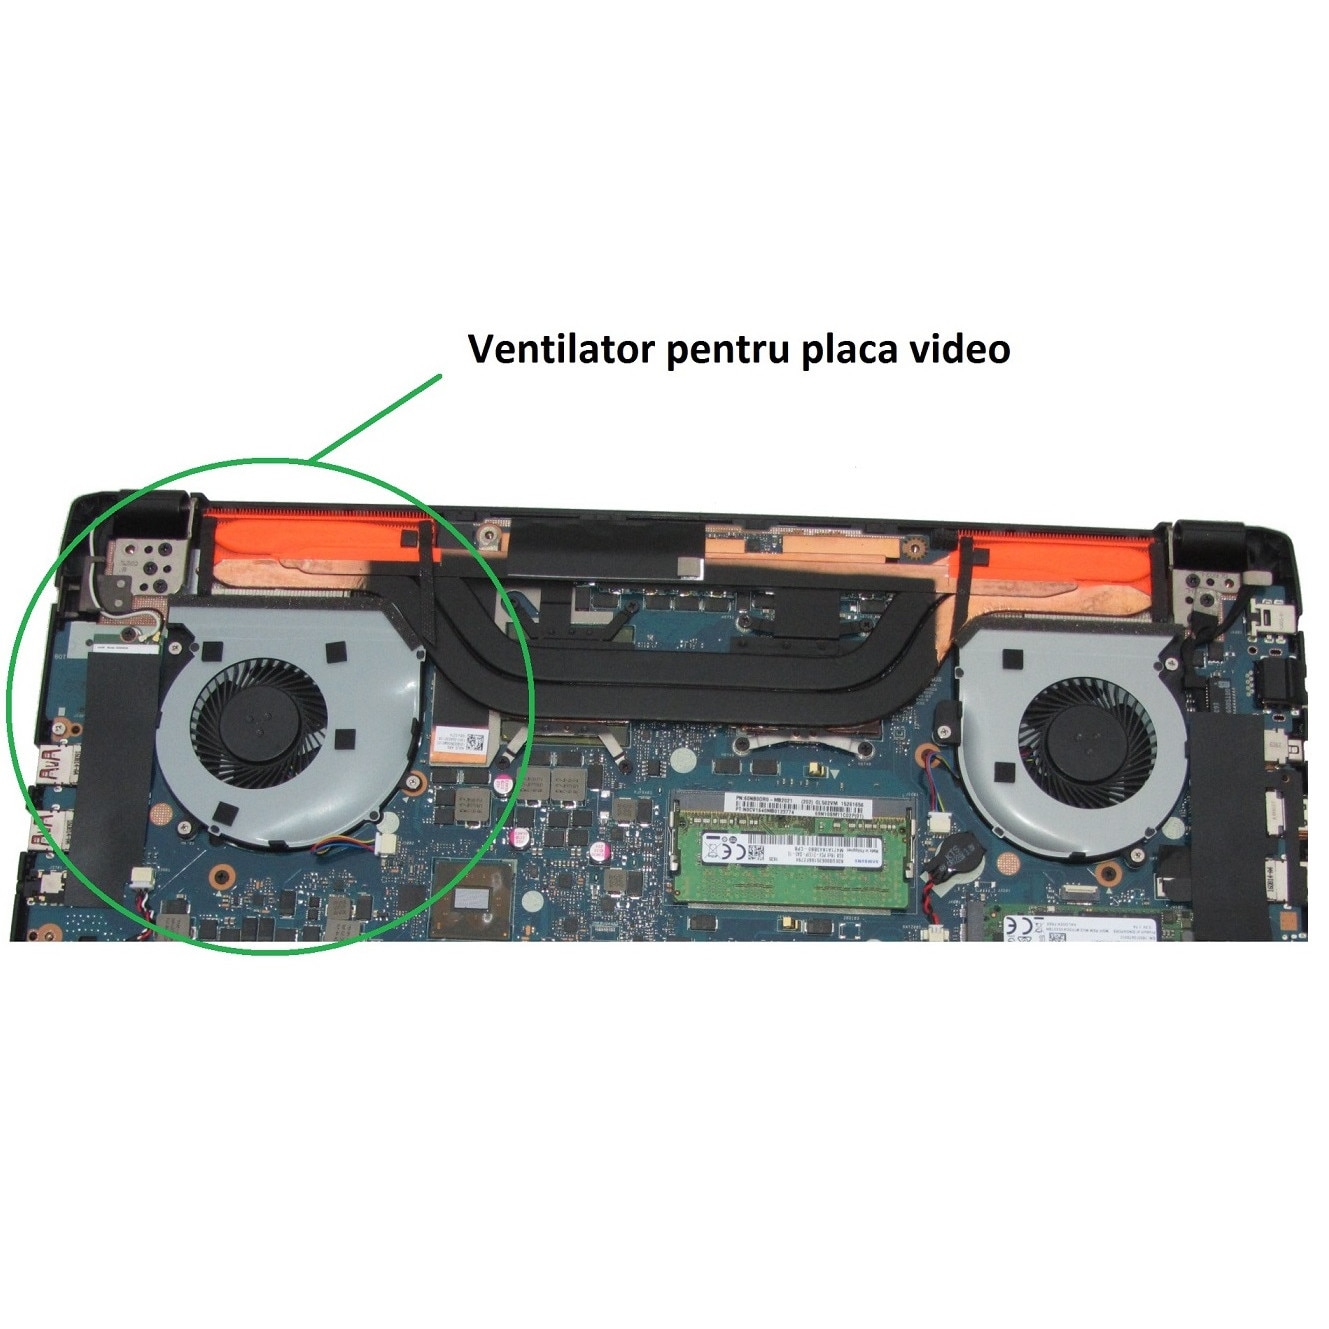 Truce channel Medal Cooler ventilator laptop Asus FX60VM, Asus FX502VE, FX502VM, FX502VD,  pentru placa video - eMAG.ro